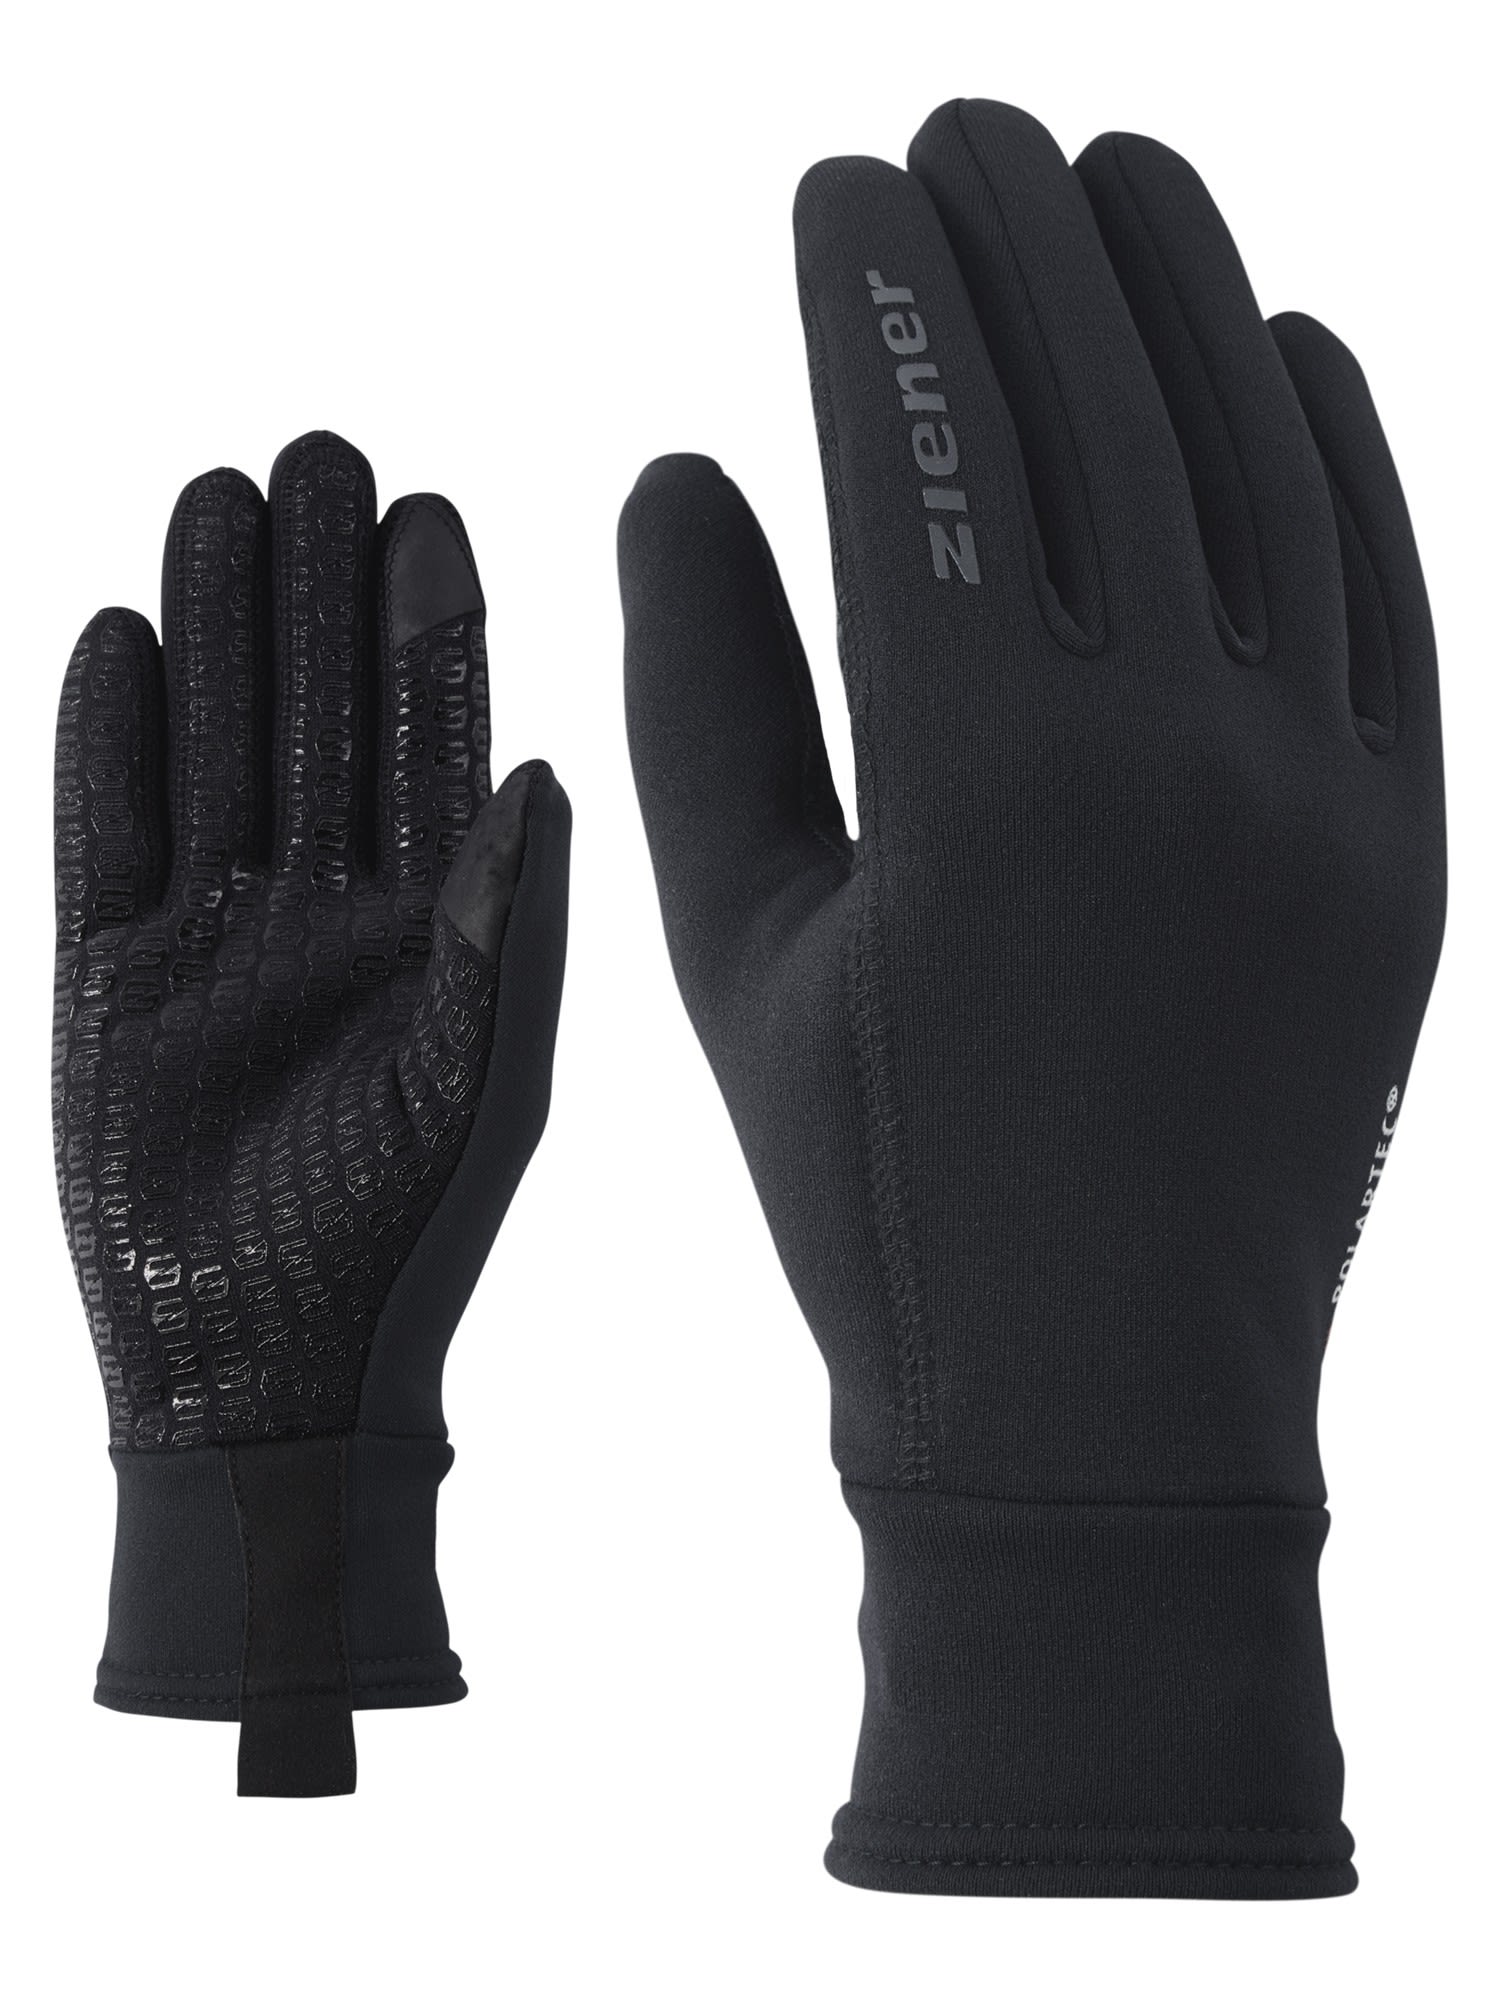 Ziener Idiwool Touch Glove Schwarz | Größe 9.5 |  Accessoires